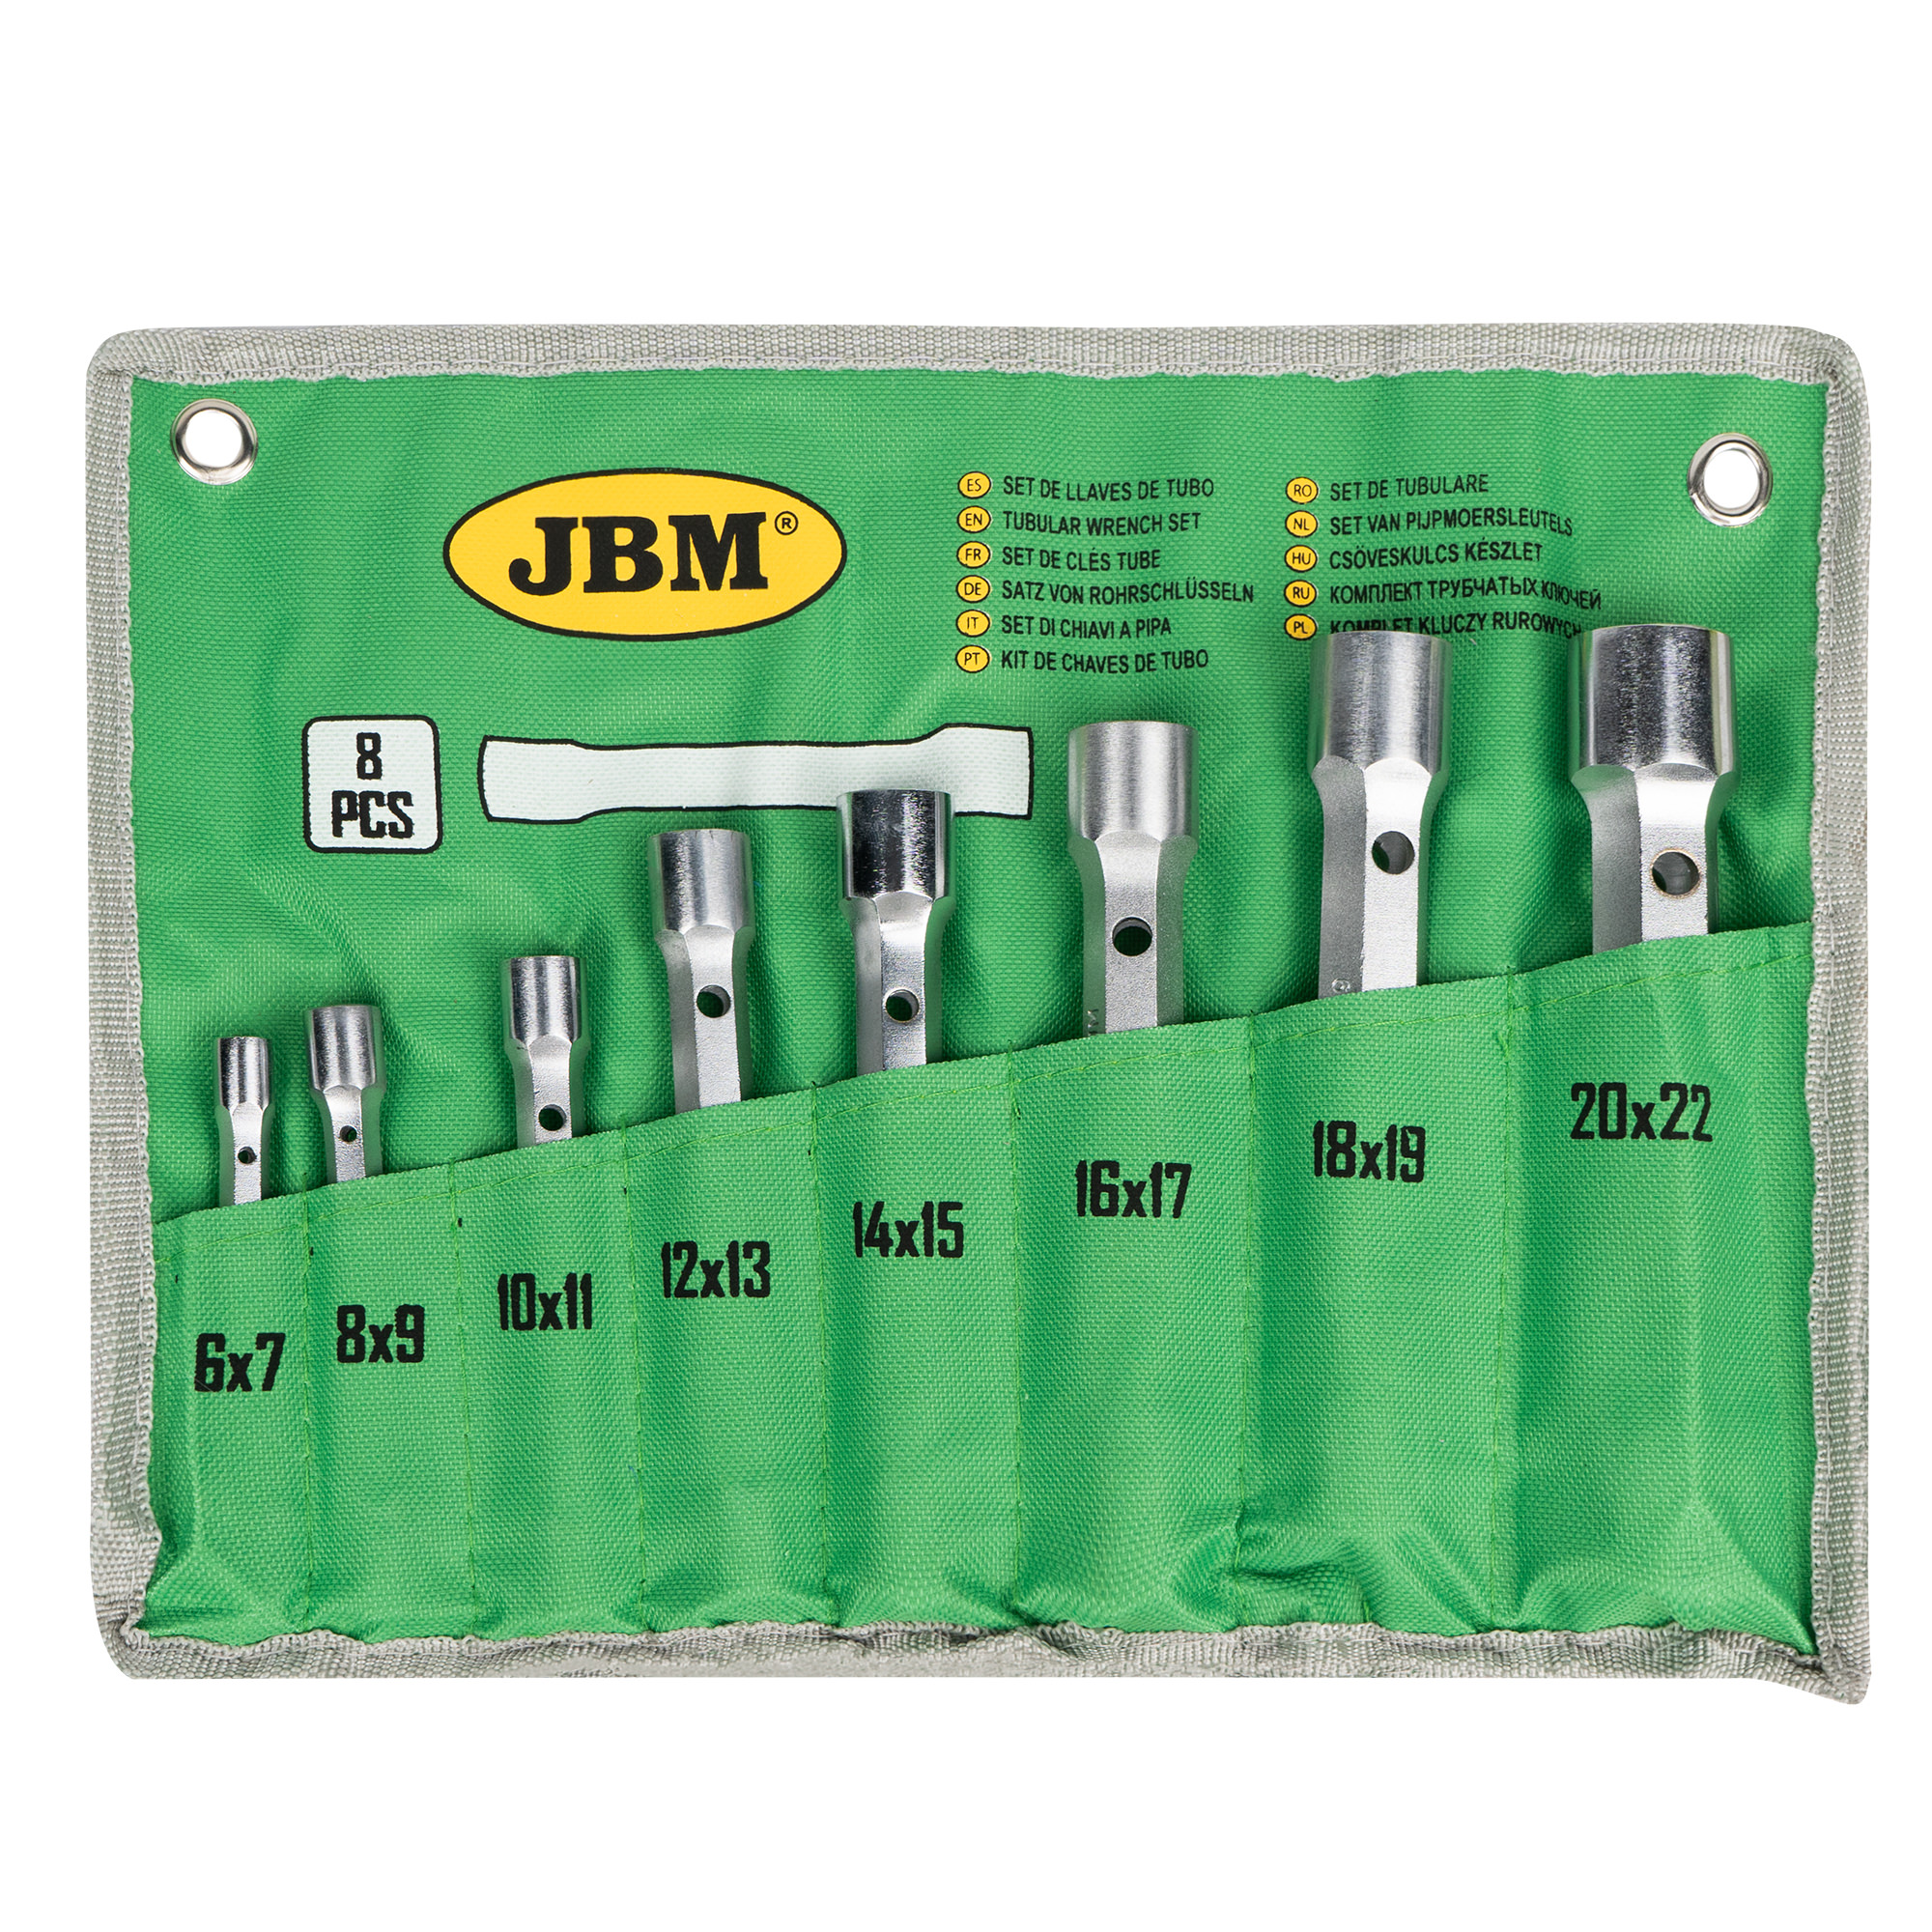 Comprar ESTUCHES EN PROMOCION de JBM, TOTHERRAMIENTA Gran Catalogo JBM y  más equipamiento para taller.